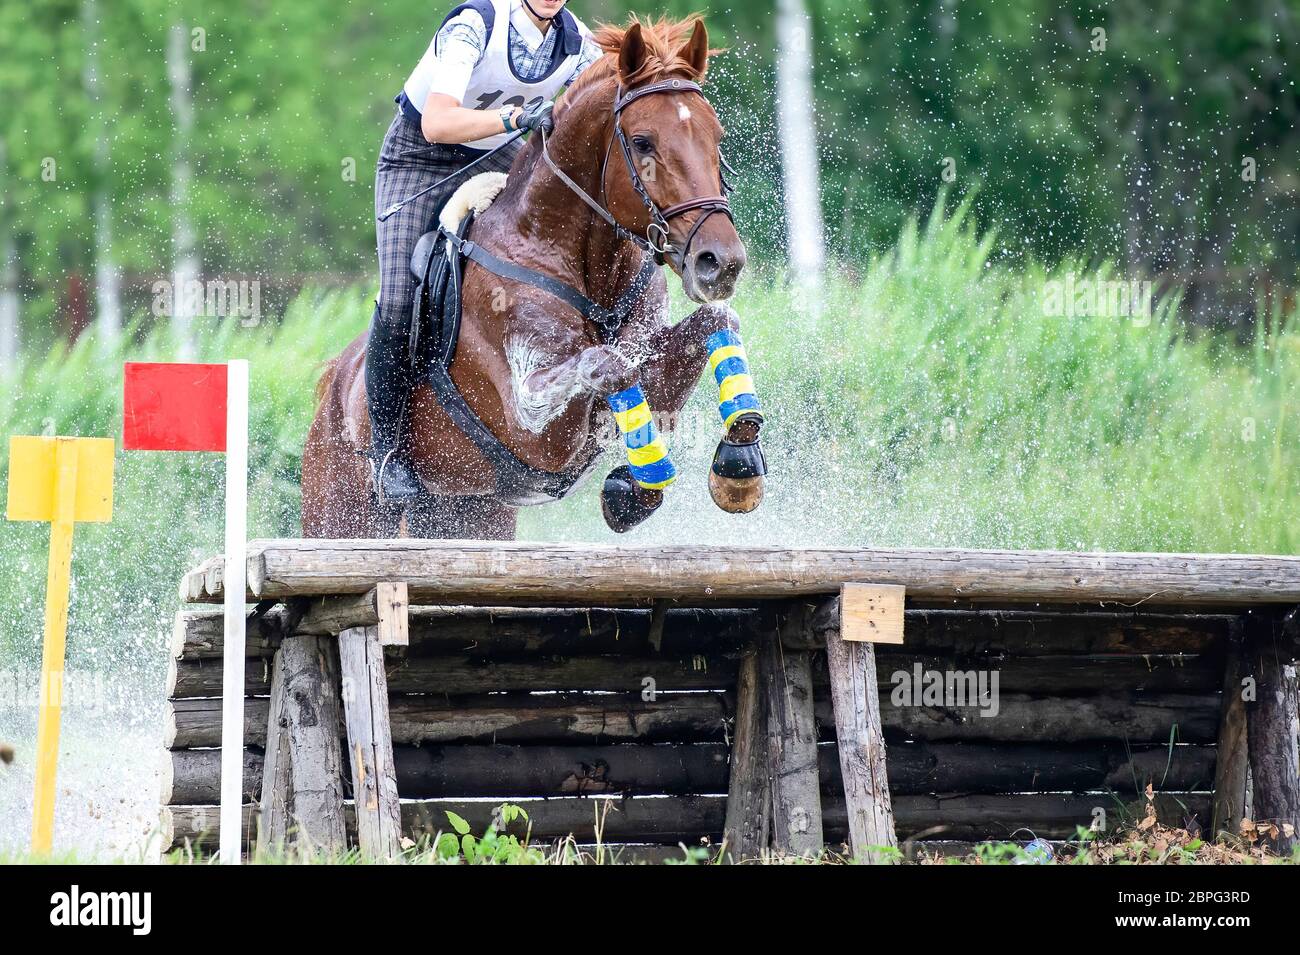 Vielseitigkeitsreiten: Reiter springen über einen Holzzaun Wasserhindernis in Splash Stockfoto